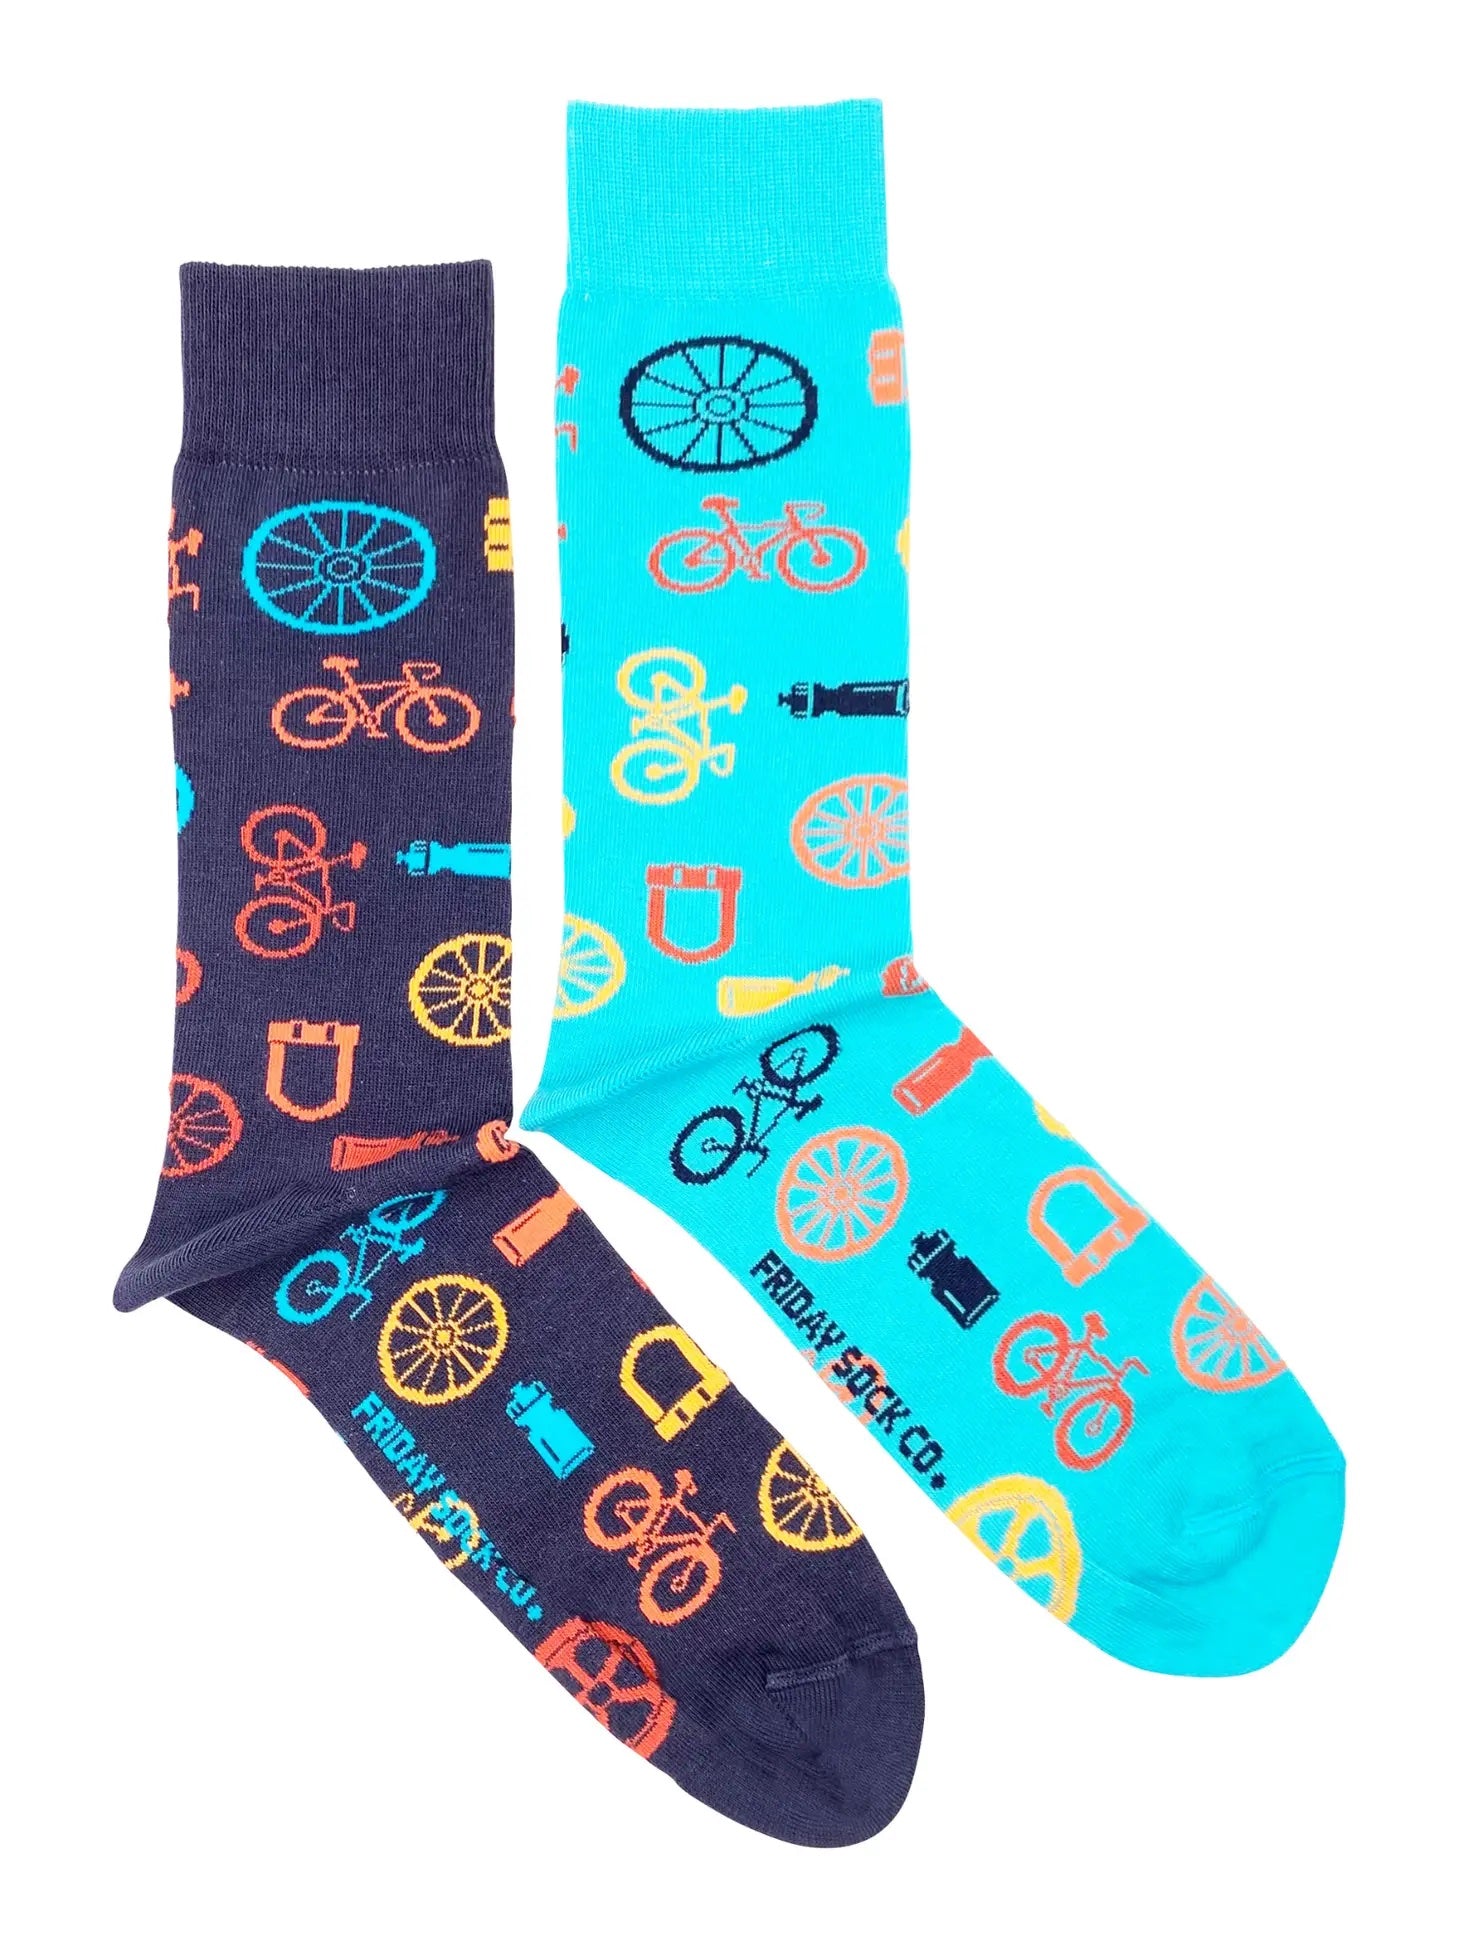 Bike Parts - Men's mismatched socks